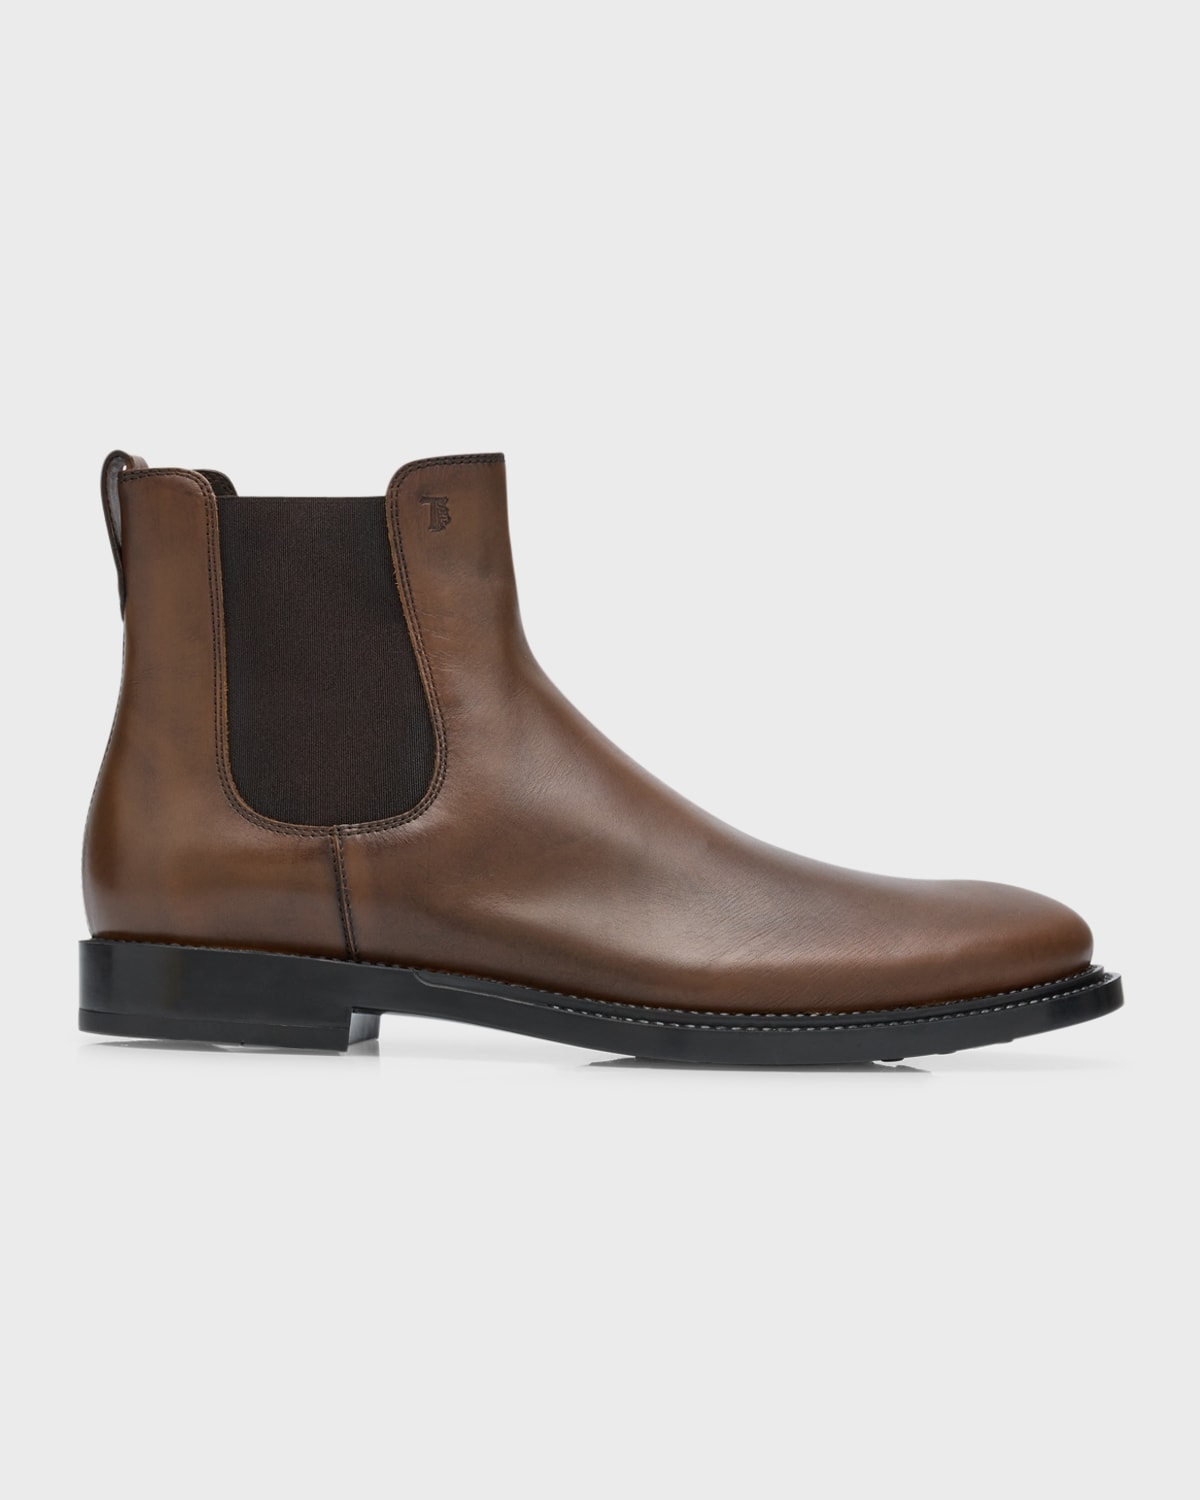 Giorgio Armani Men's Leather Chelsea Boots | Neiman Marcus